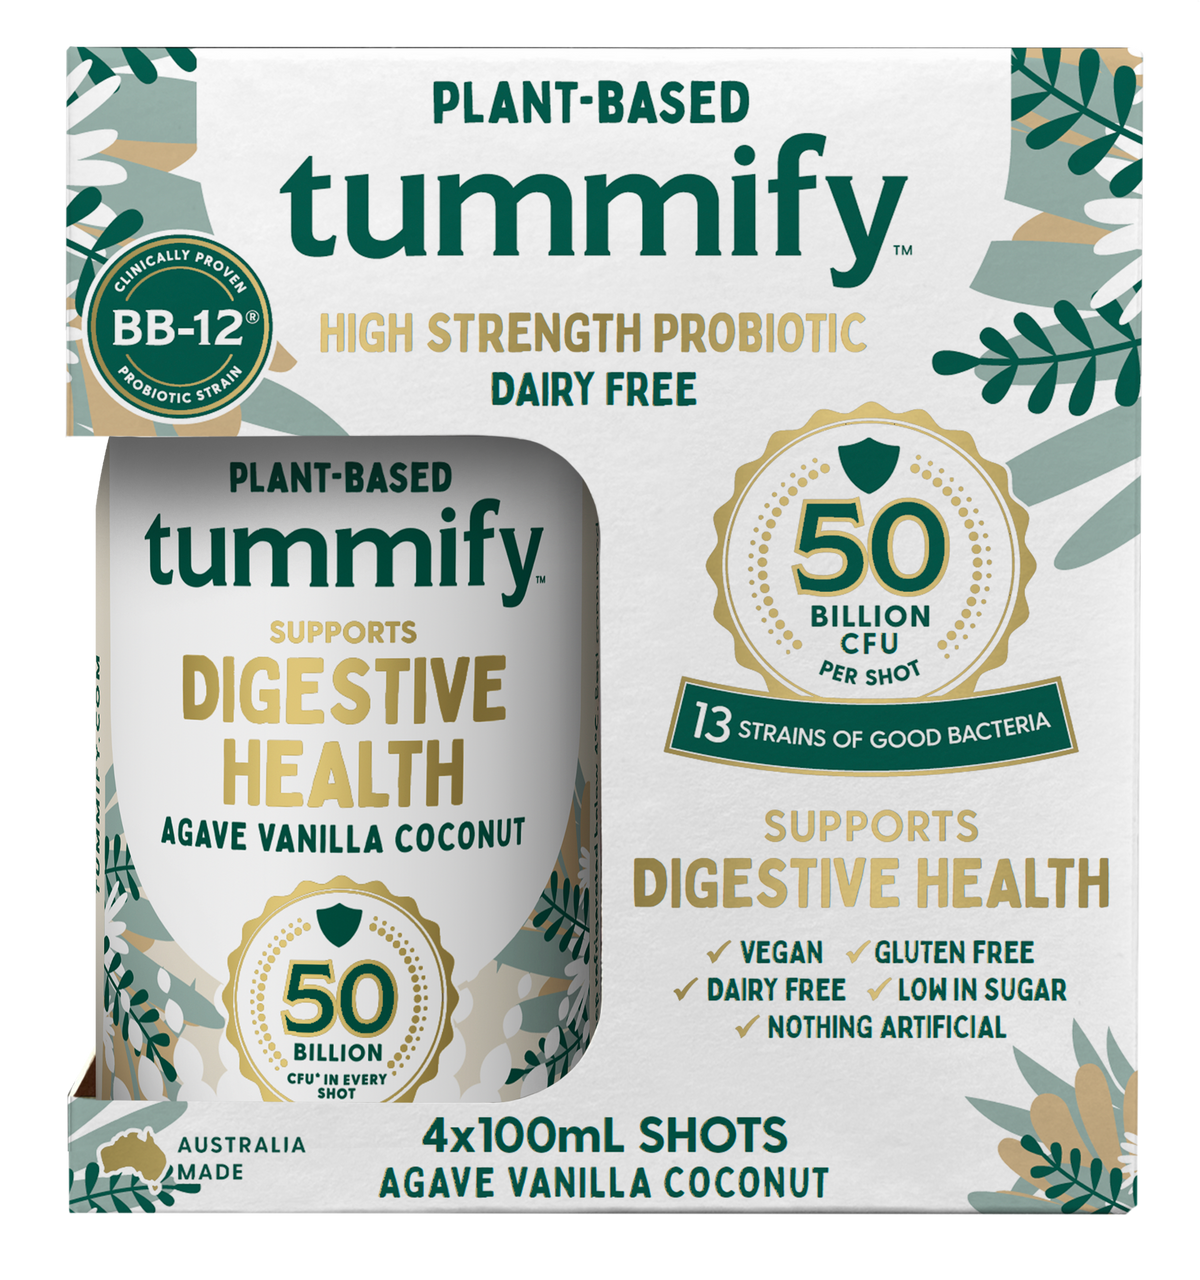 Tummify Plant-Based